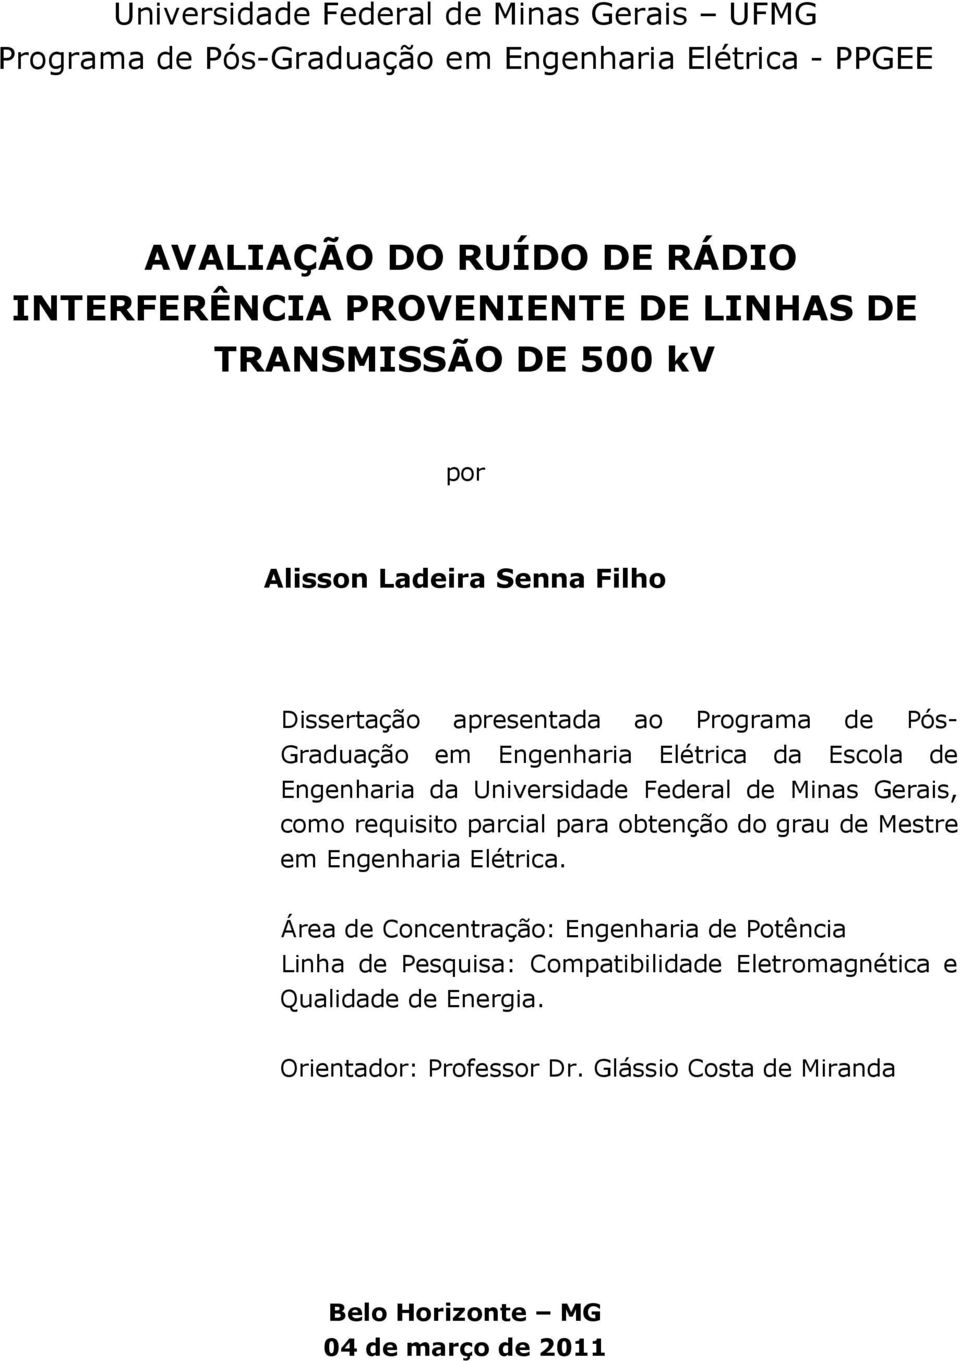 Universidade Federal de Minas Gerais, como requisito parcial para obtenção do grau de Mestre em Engenharia Elétrica.